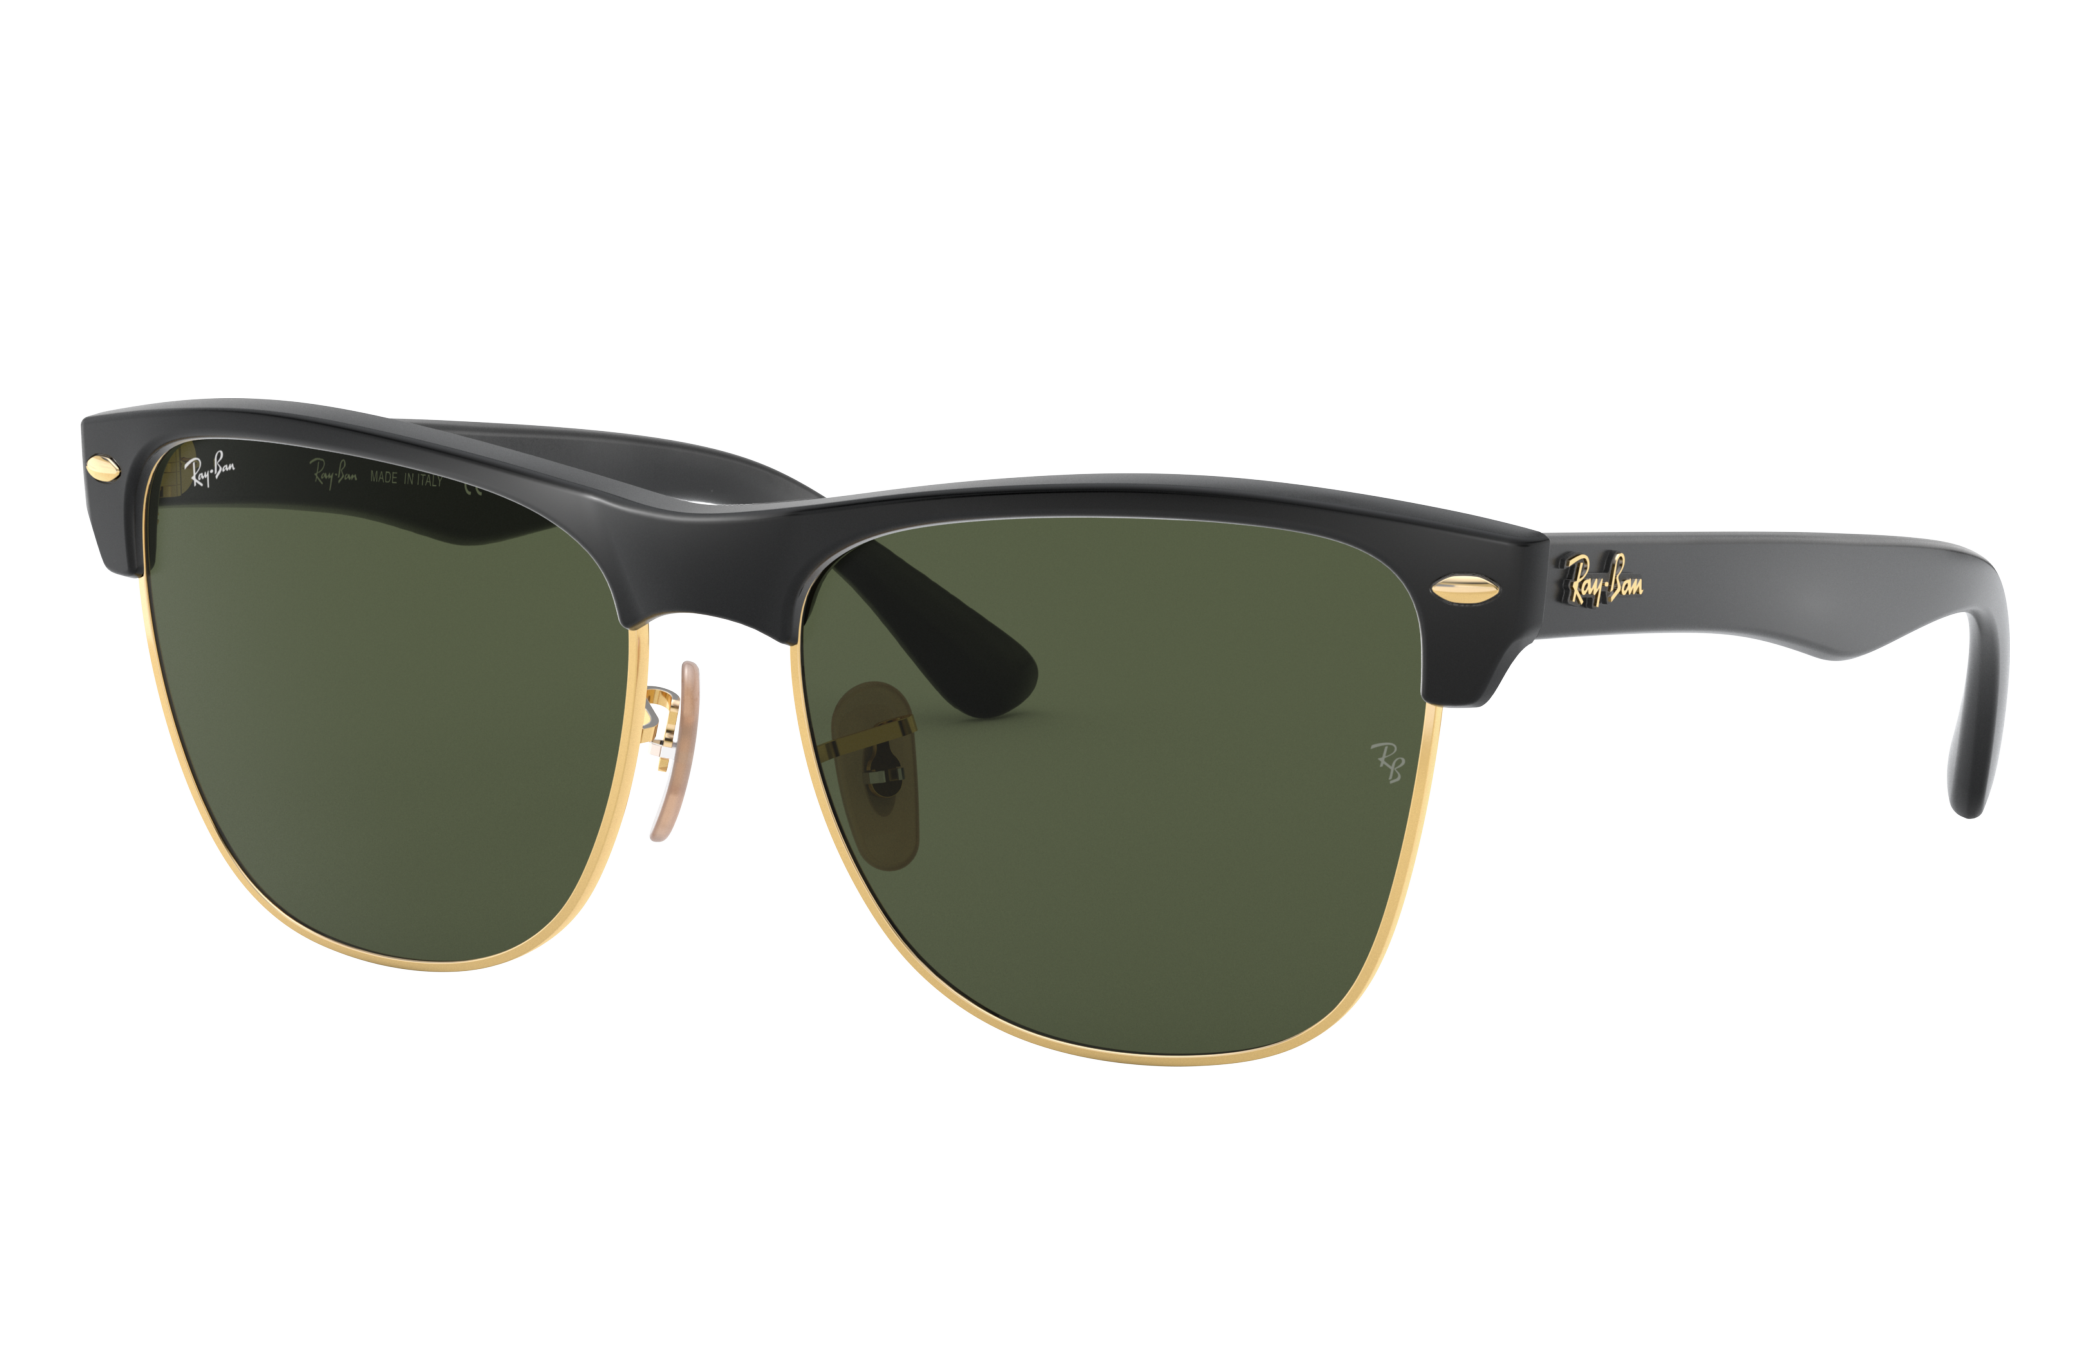 Ray-Ban Justin Square Sunglasses - Black Sunglasses, Accessories - WRX78605  | The RealReal